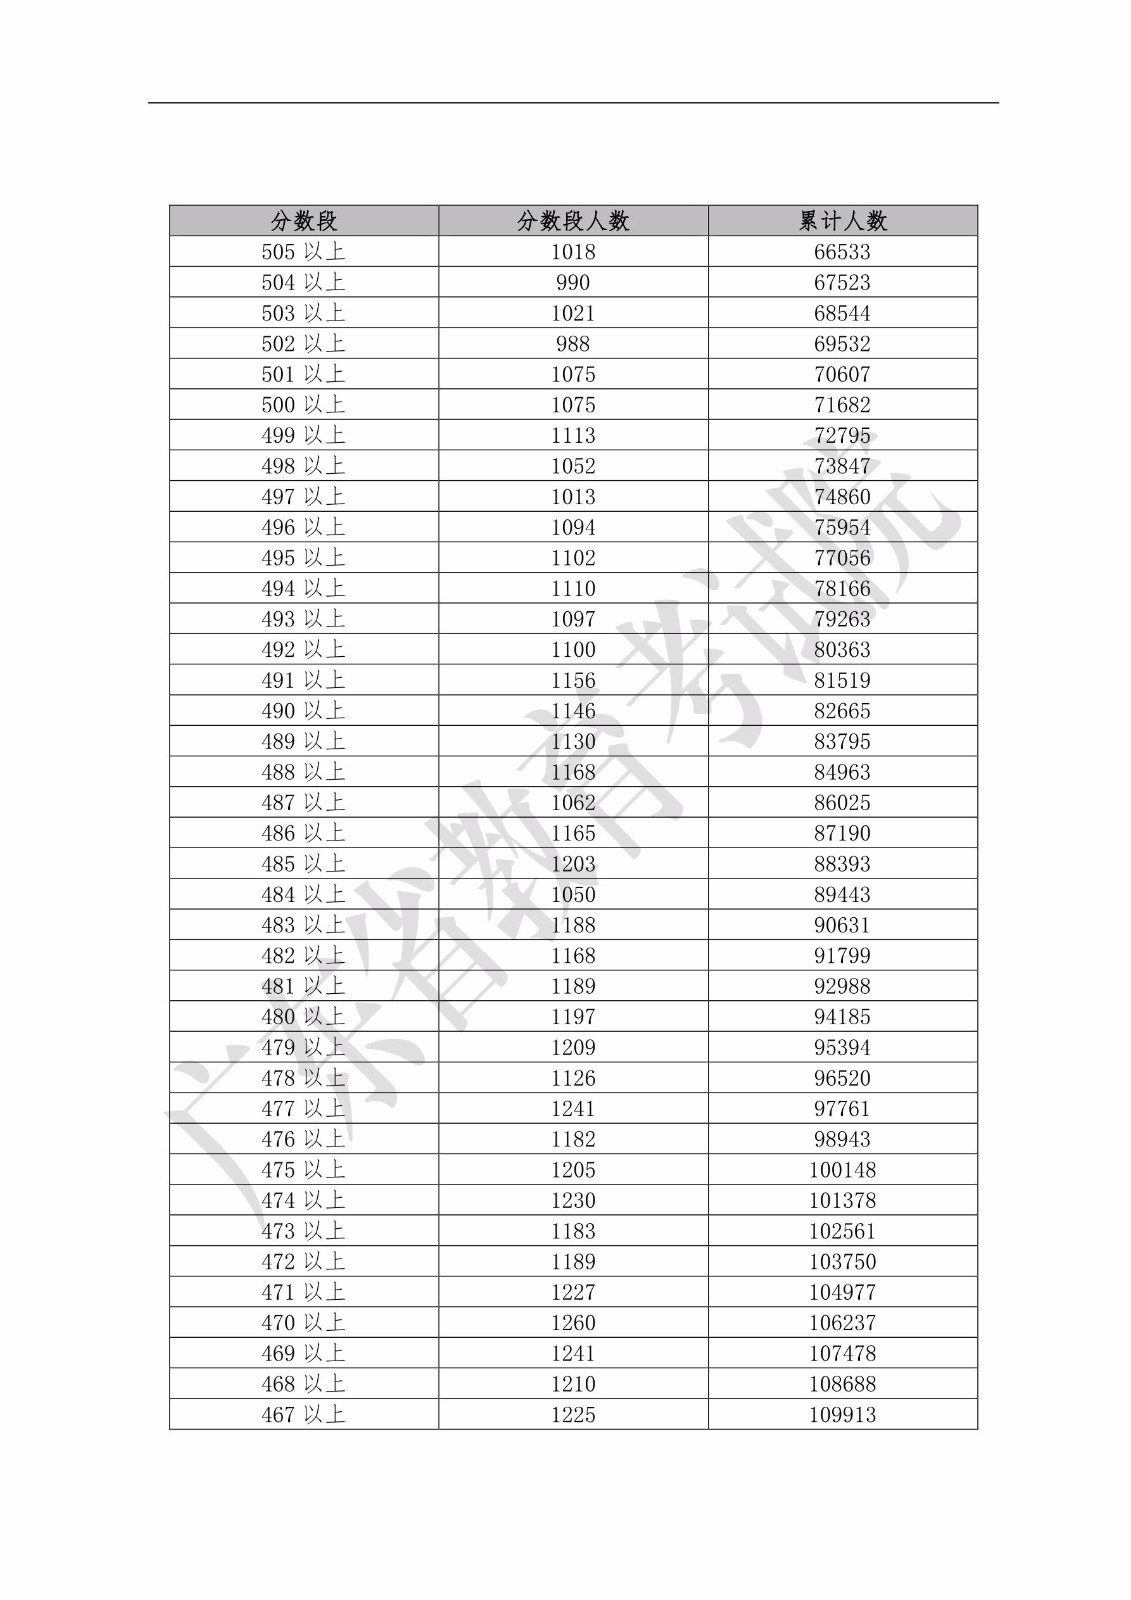 2019年广东省普通高考理科类分数段统计表